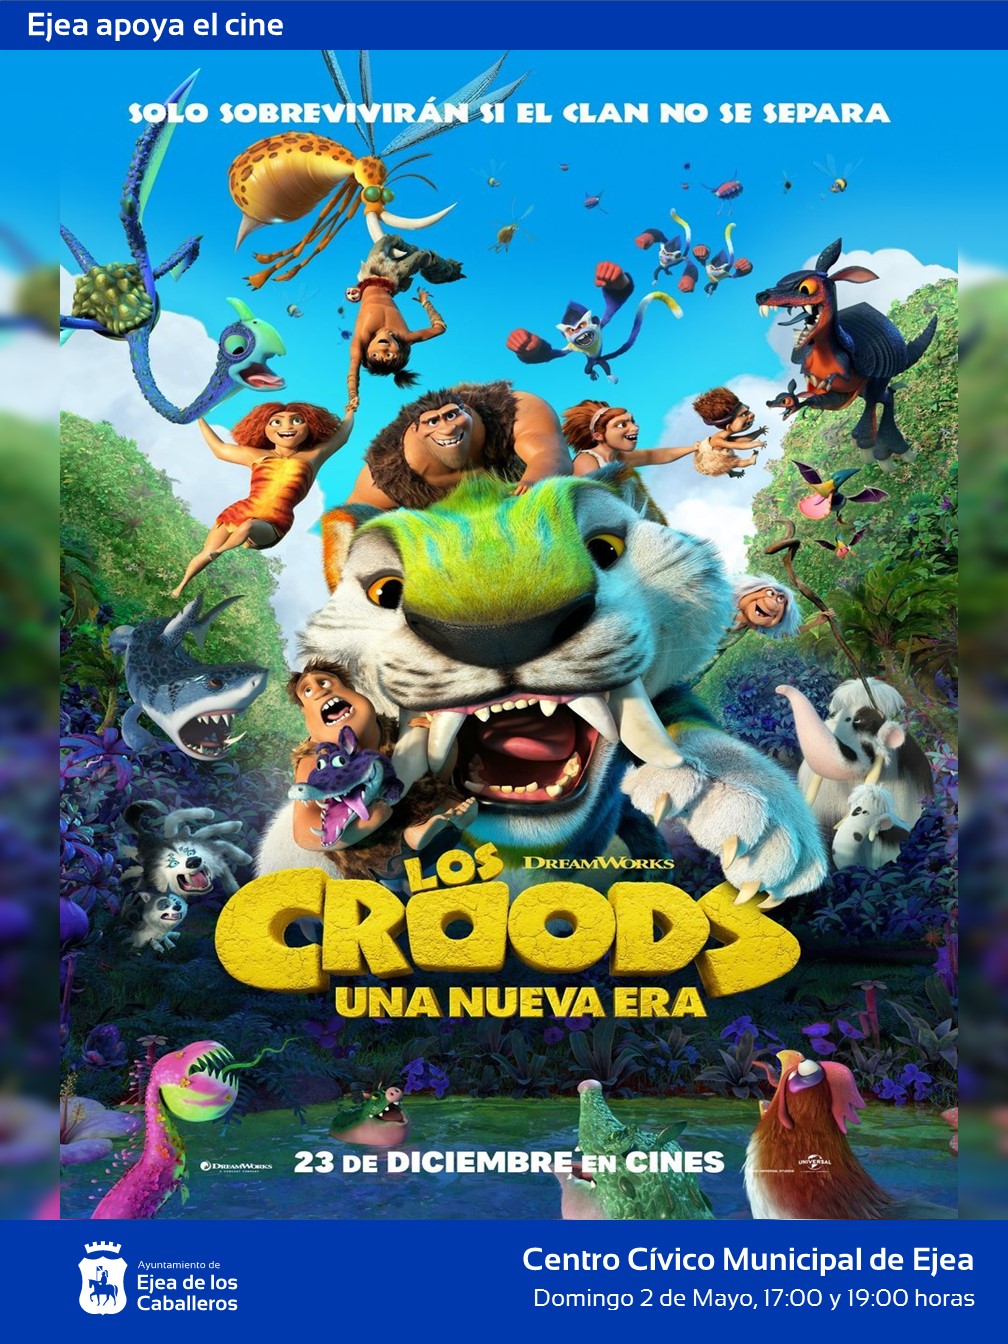 En este momento estás viendo Ejea apoya el cine: “Los Croods. Una nueva era”, una película de animación con originales y divertidas aventuras